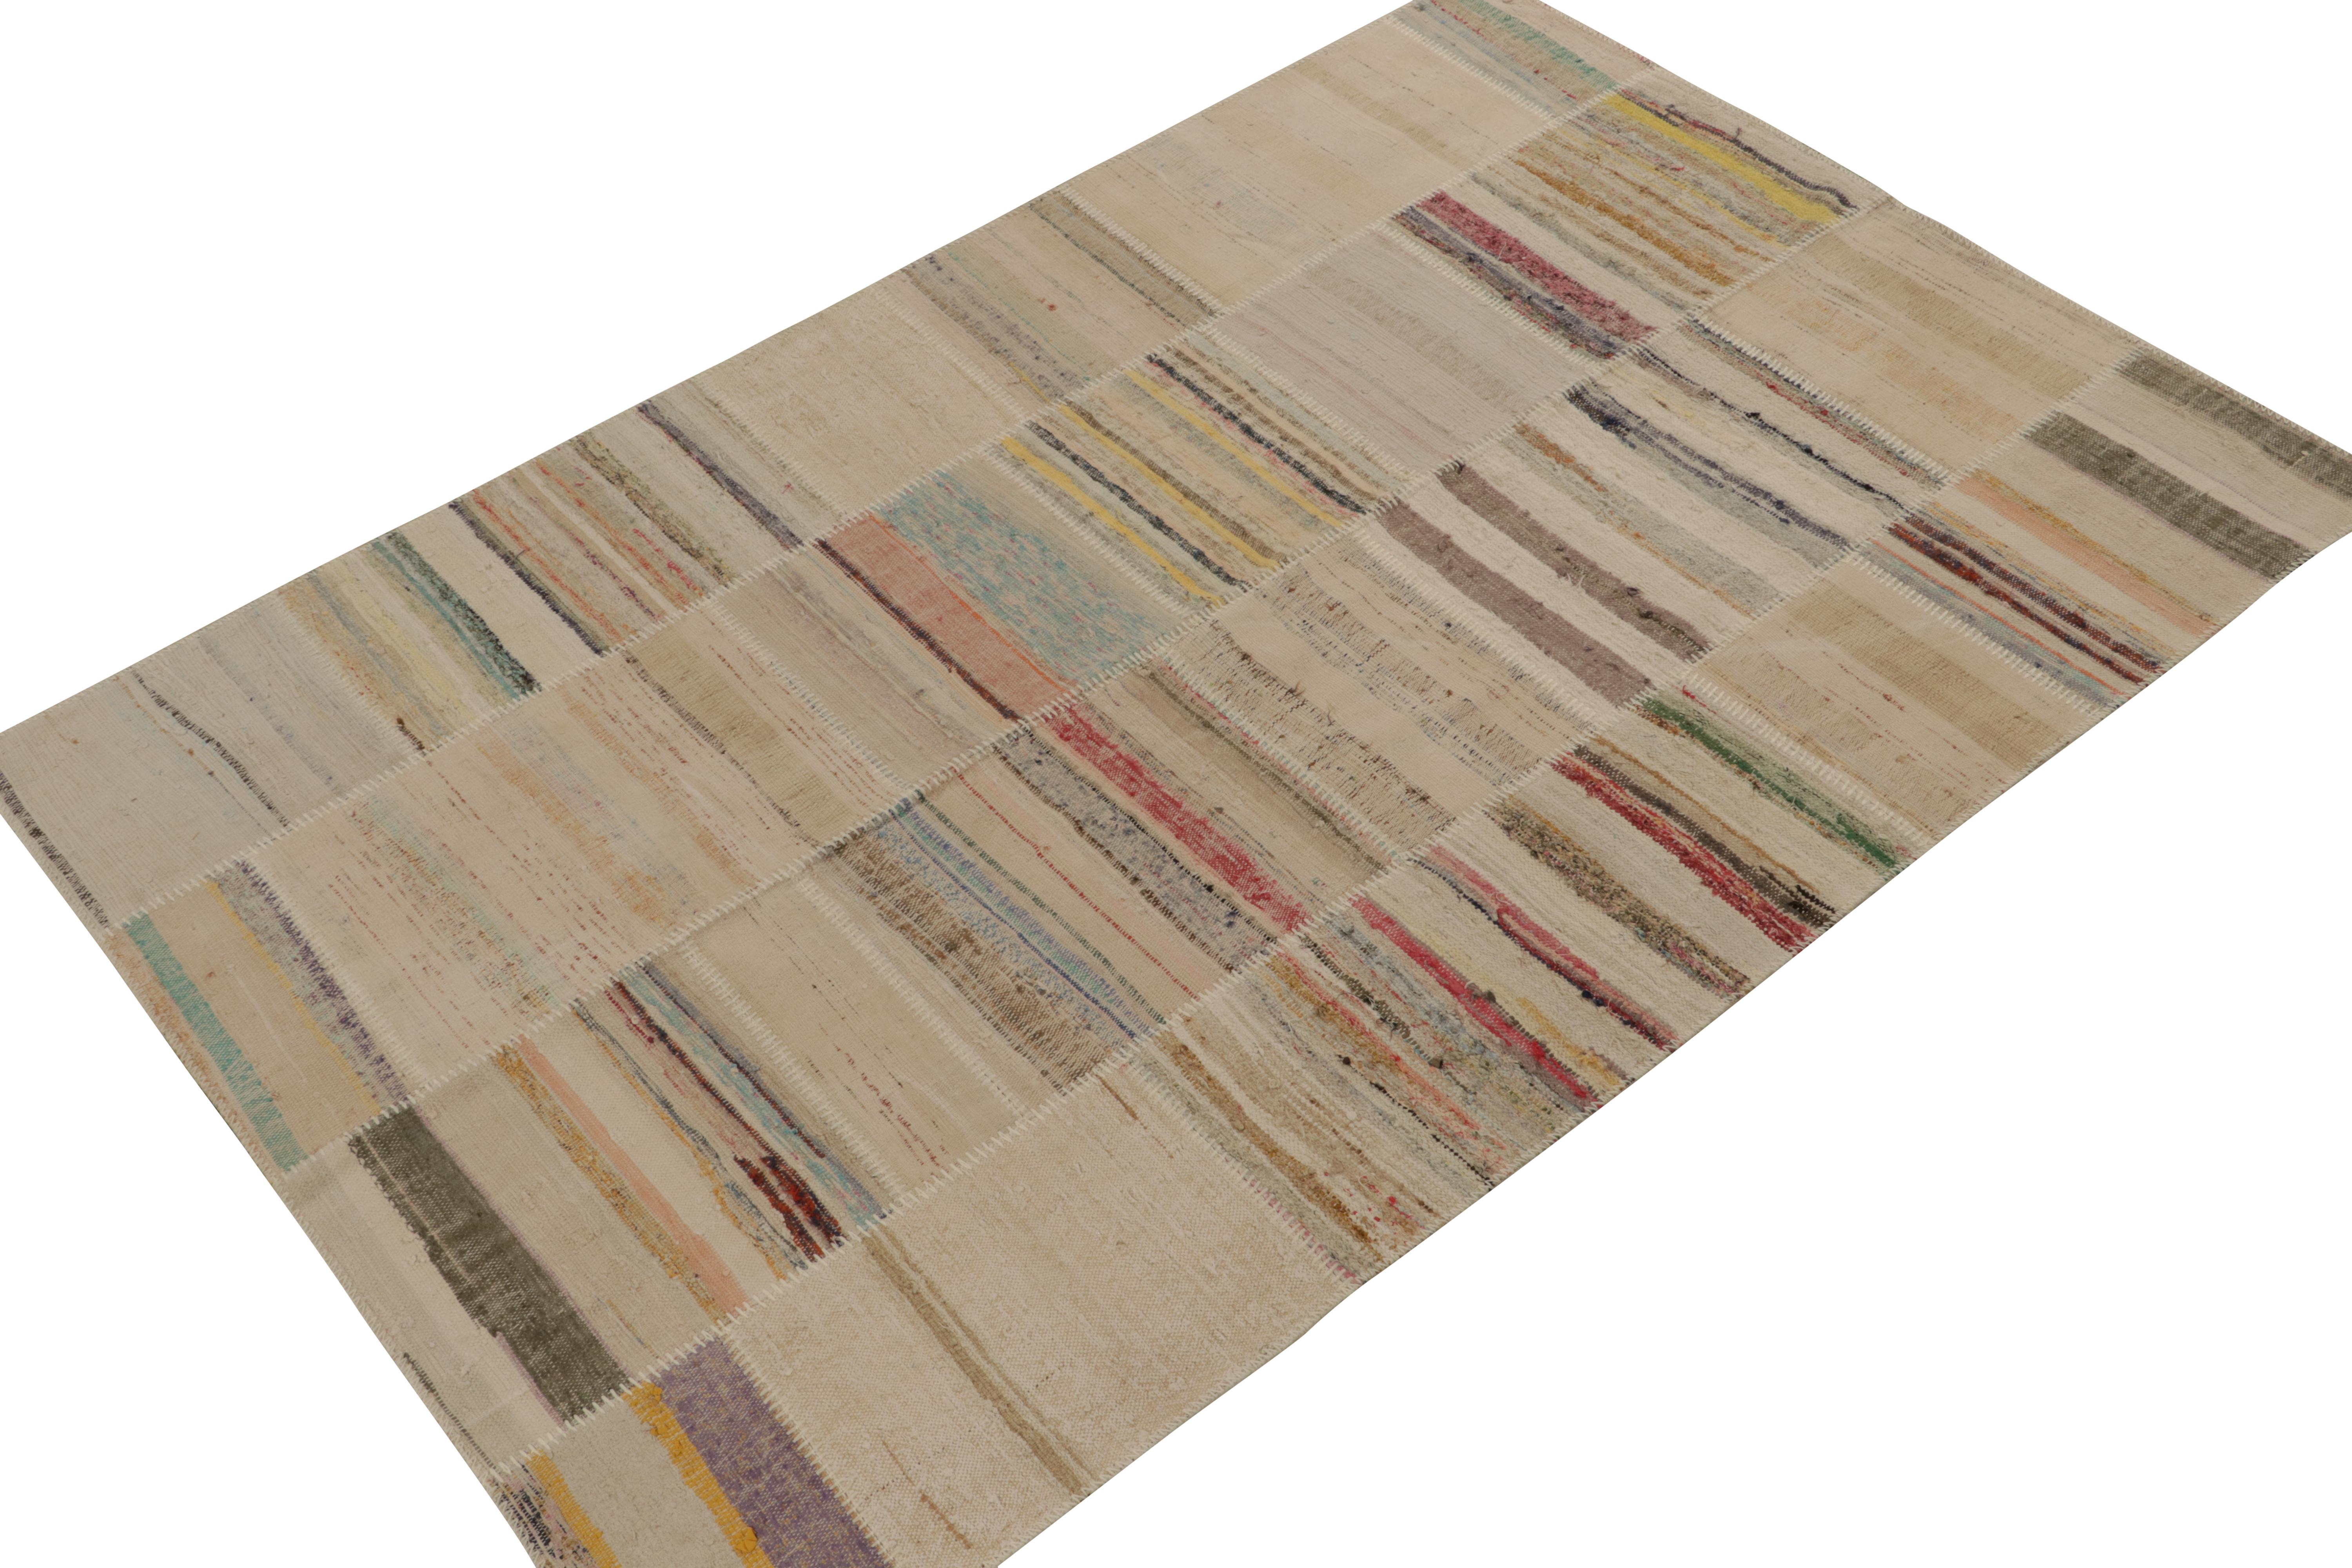 Tissé à la main en laine, Rug & Kilim présente un tapis contemporain 6x9 issu de sa nouvelle collection innovante de kilim en patchwork. 

Sur le design : 

Cette technique de tissage à plat réutilise des fils vintage dans des rayures et des